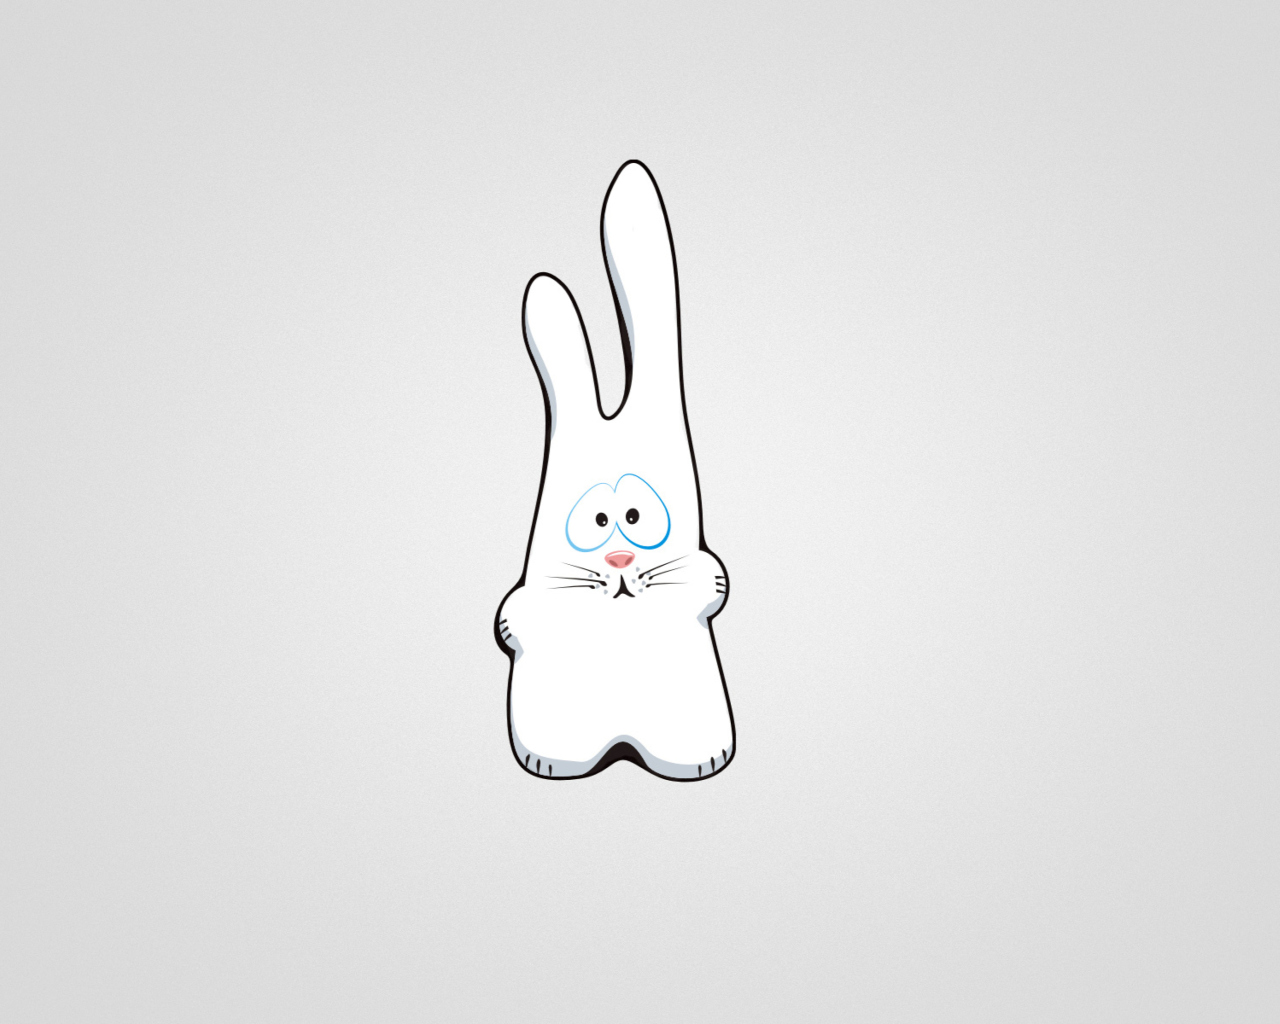 Das Funny Bunny Sketch Wallpaper 1280x1024